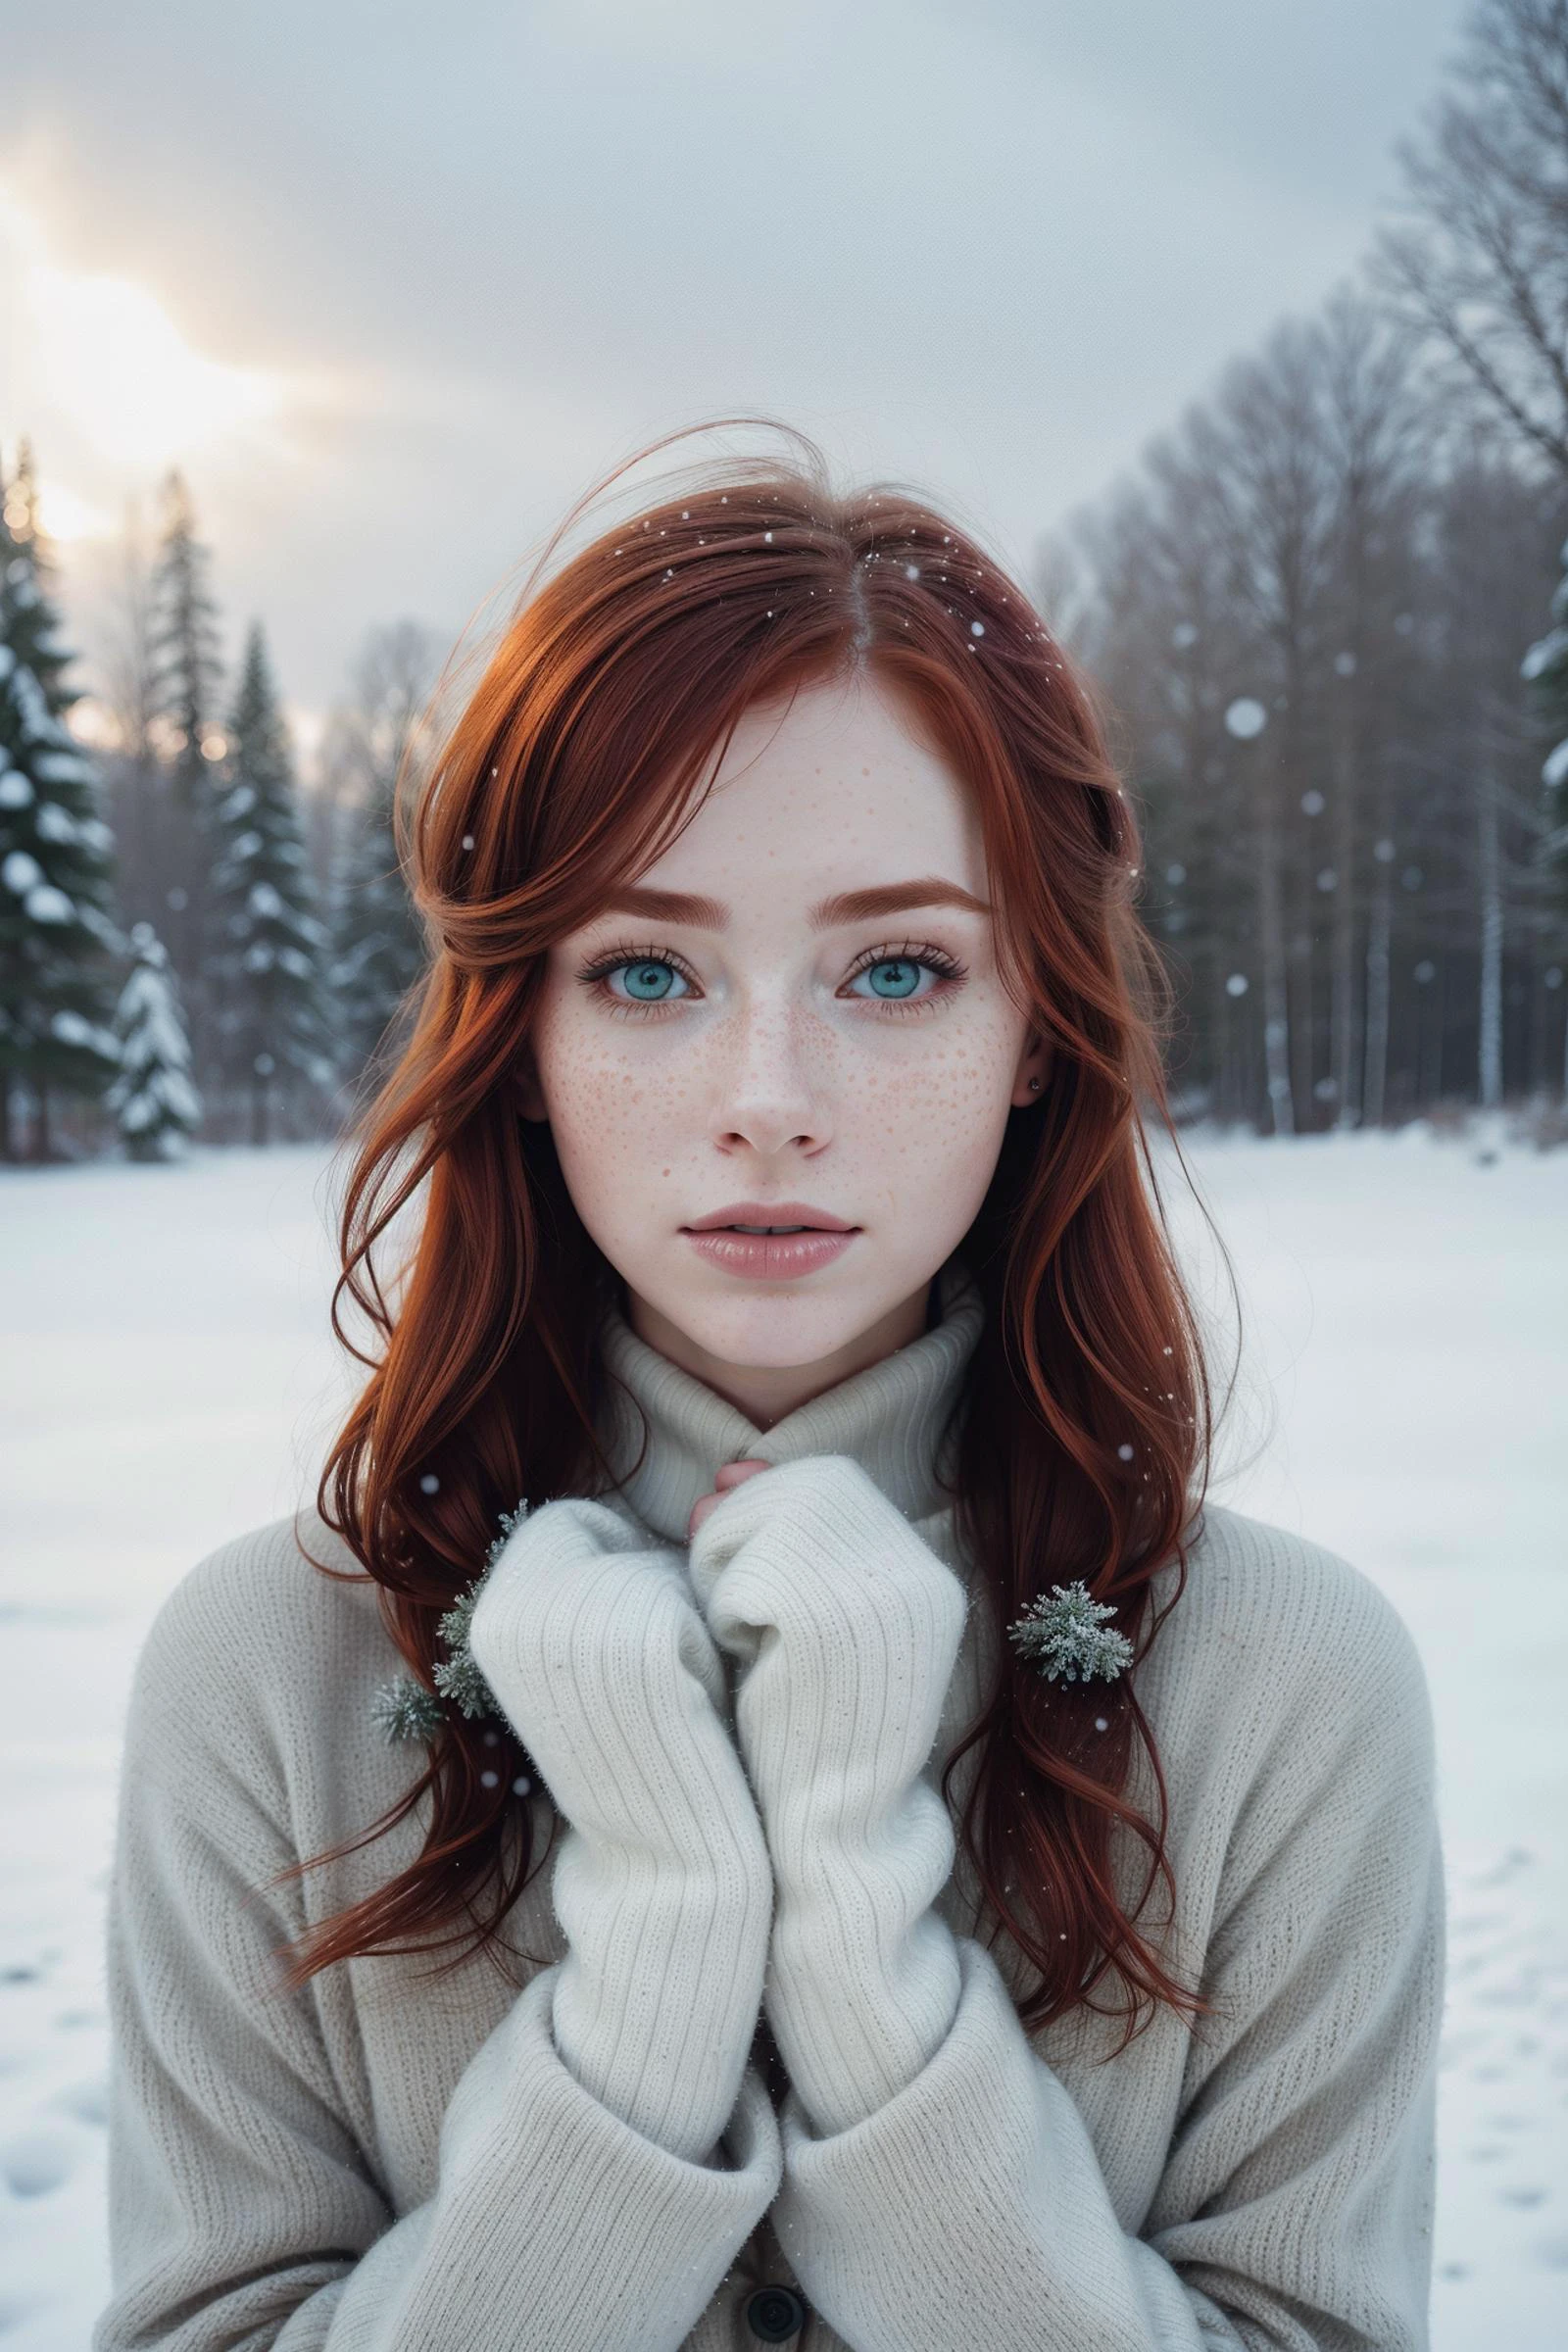 откровенный,  1 женщина,грустный рыжий,светлые веснушки,снег на волосах,  мечтательная дымка,легкая одежда,перчатки, зимняя сказка, снежная буря, божественные лучи,природа,  мгновенное фото,реалистичный ,пастель, Мягкий свет,  Темные небеса,Цветная ломохромная пленка, идеальное лицо, идеальные симметричные детальные зеленые глаза, знаки красоты,